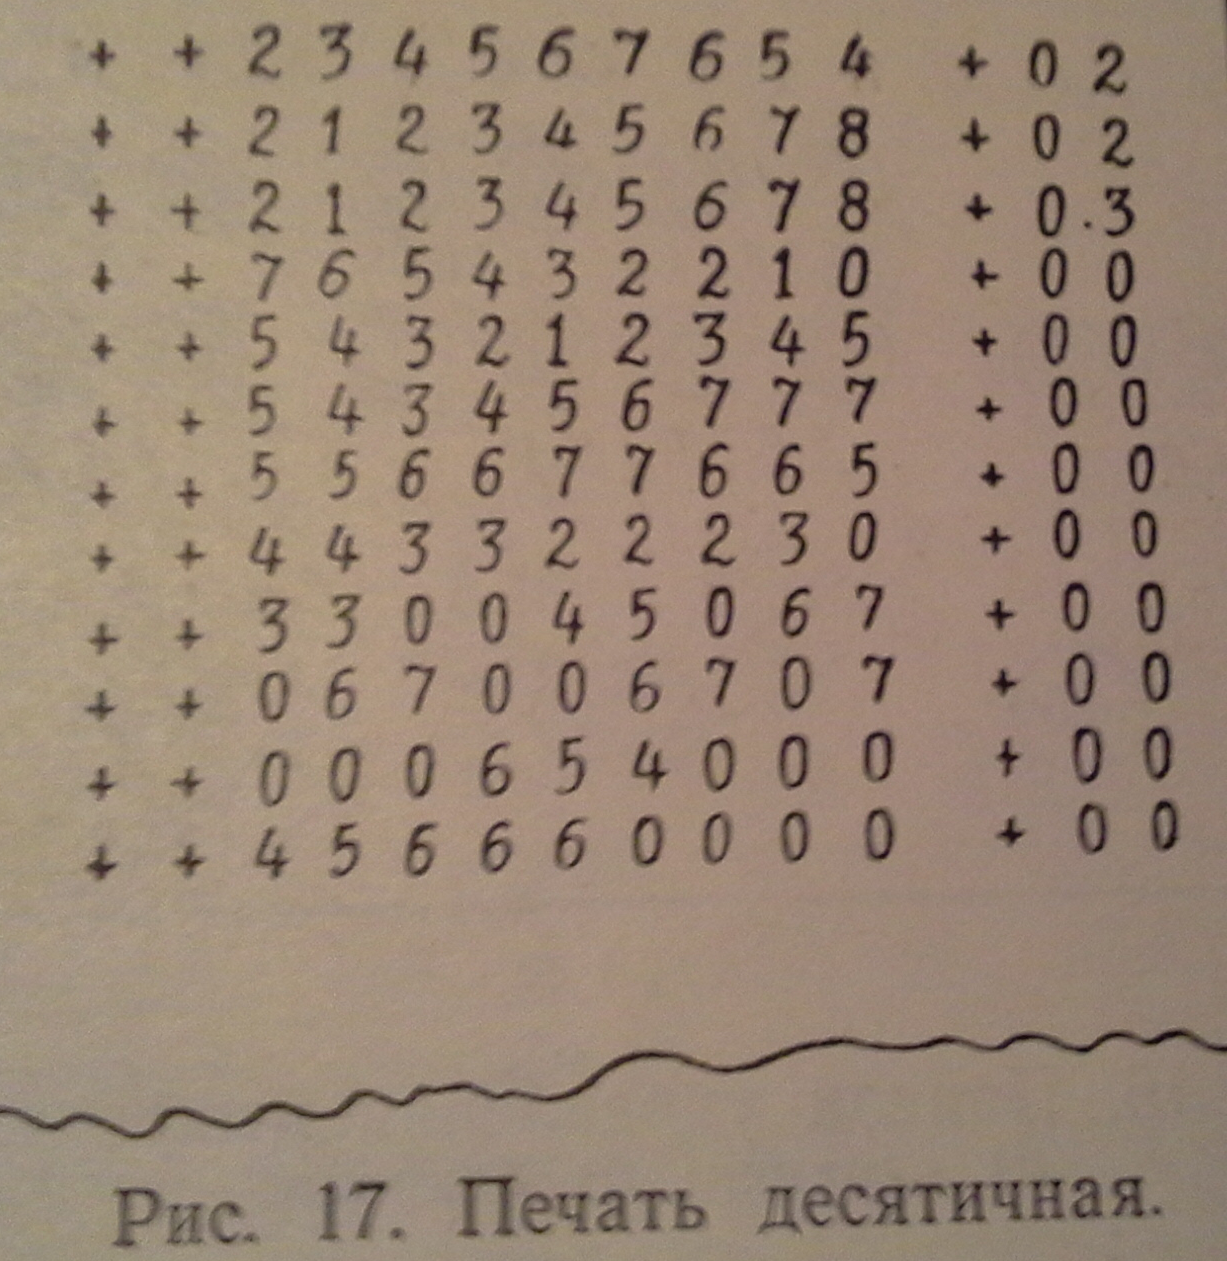 М-20. Печать десятичная. 1963